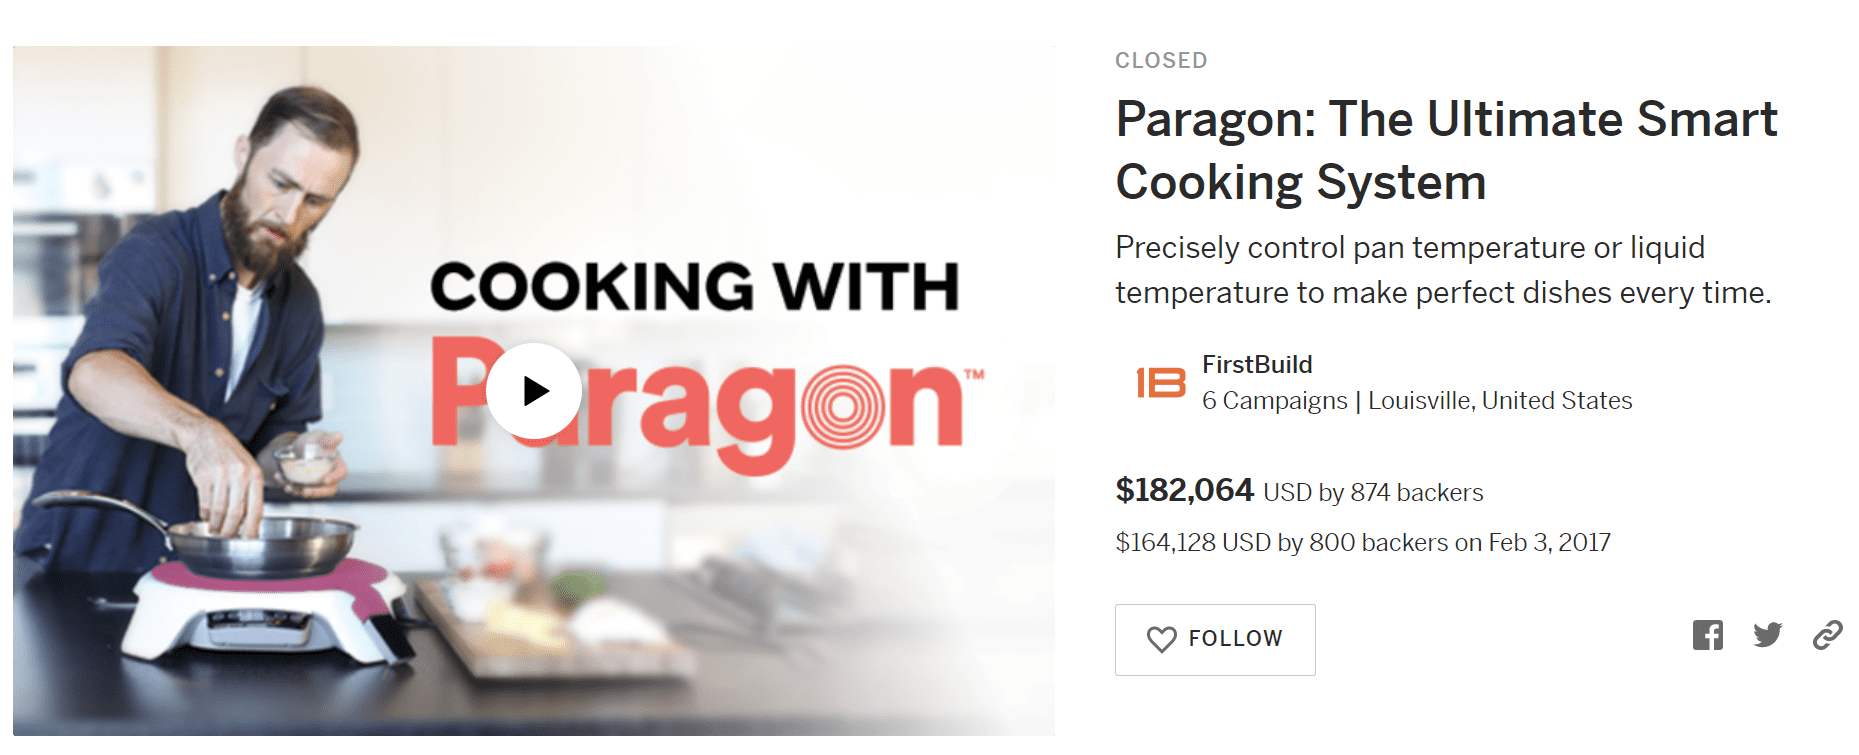 FirstBuild Paragon Induction Cooktop review: Paragon provides versatile  gateway to sous vide - CNET